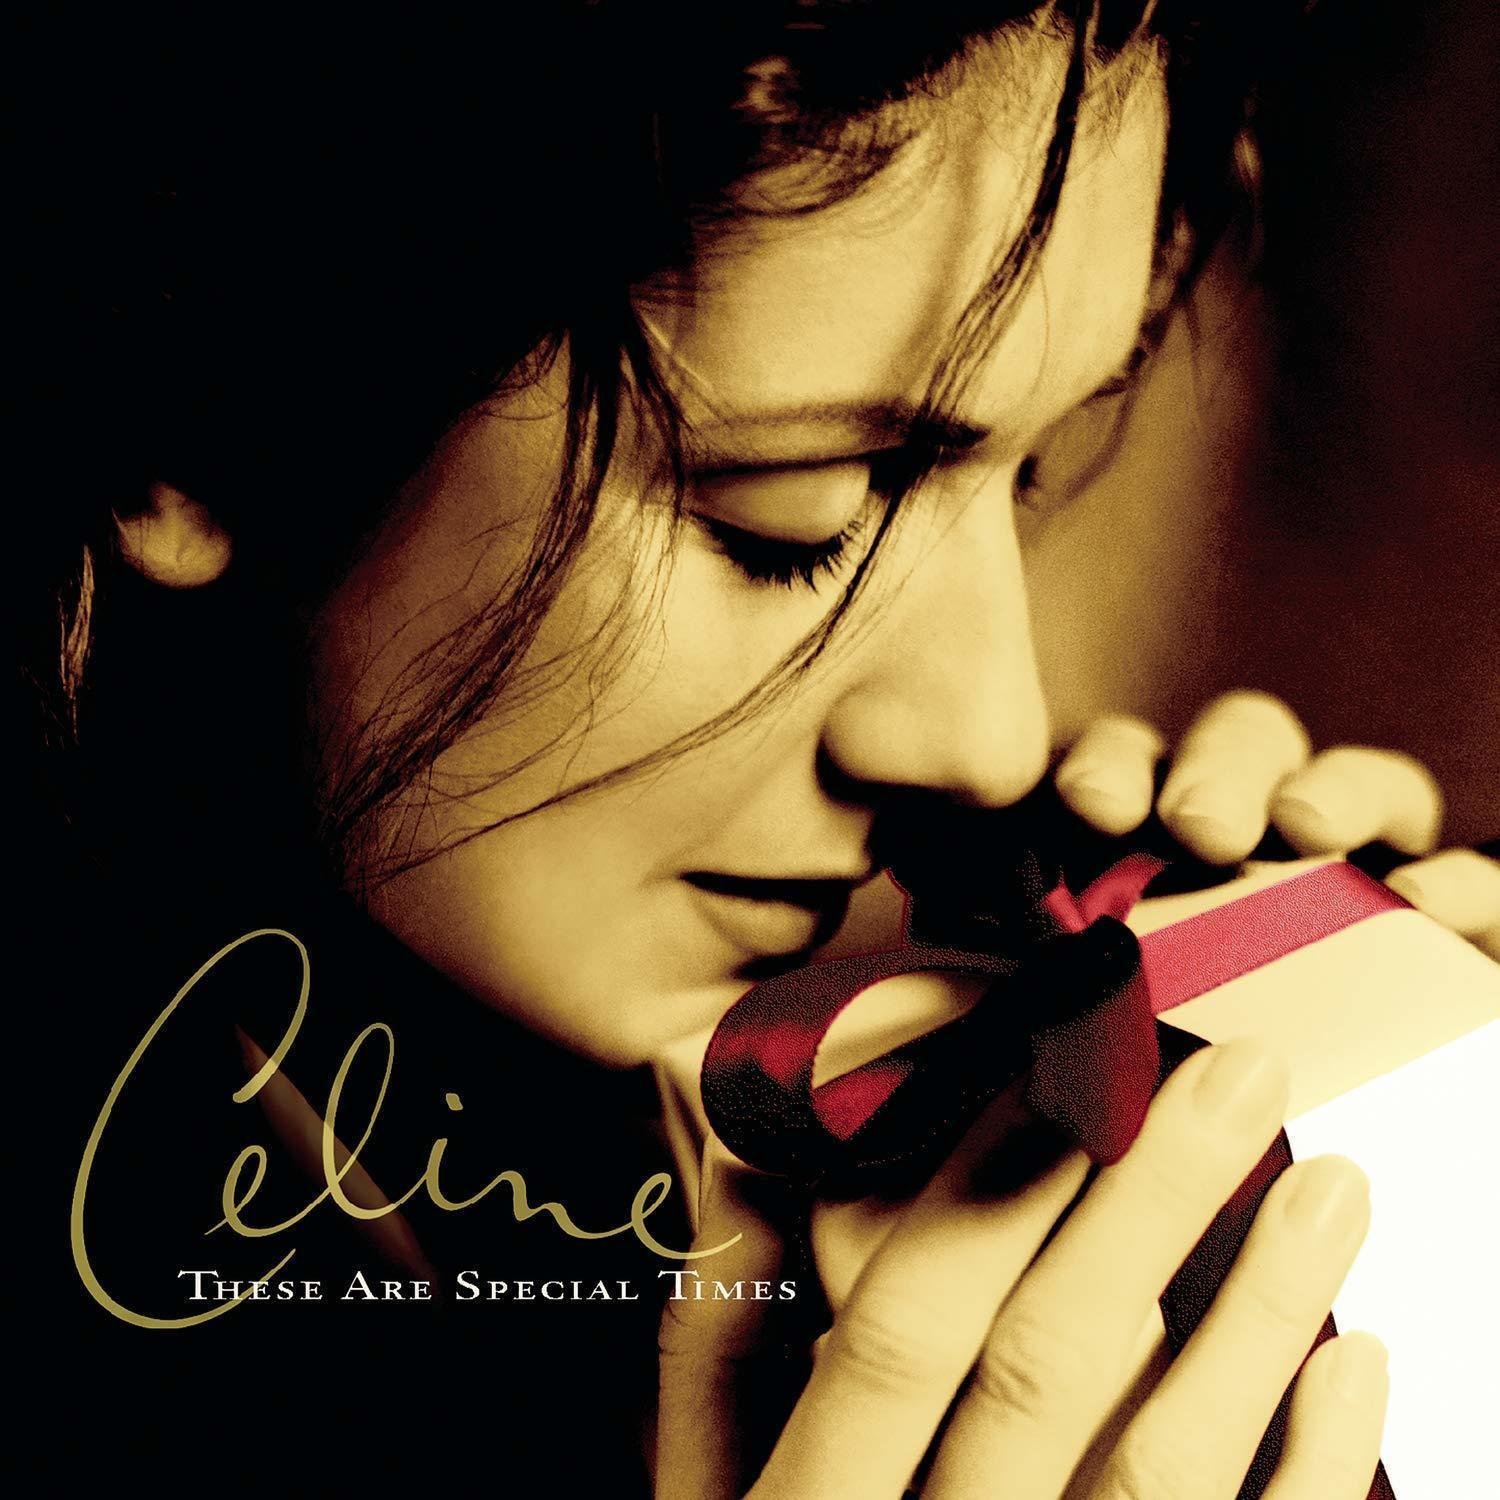 LP deska Celine Dion These Are Special Times (2 LP)